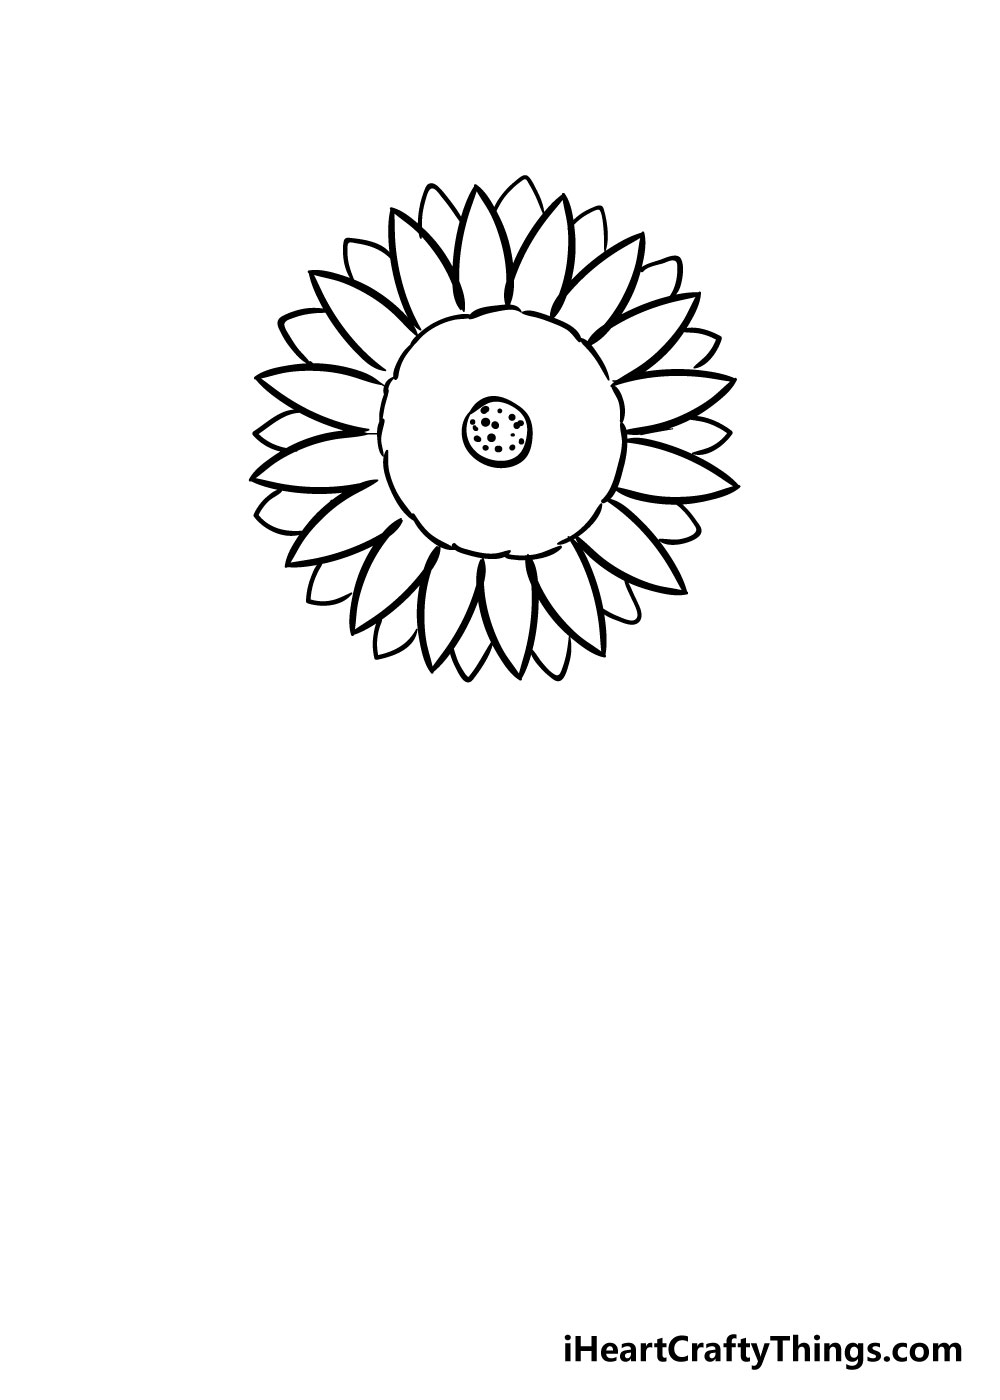 How to draw Sunflower 5 - Hướng dẫn chi tiết cách vẽ hoa hướng dương đơn giản gồm 10 bước cơ bản